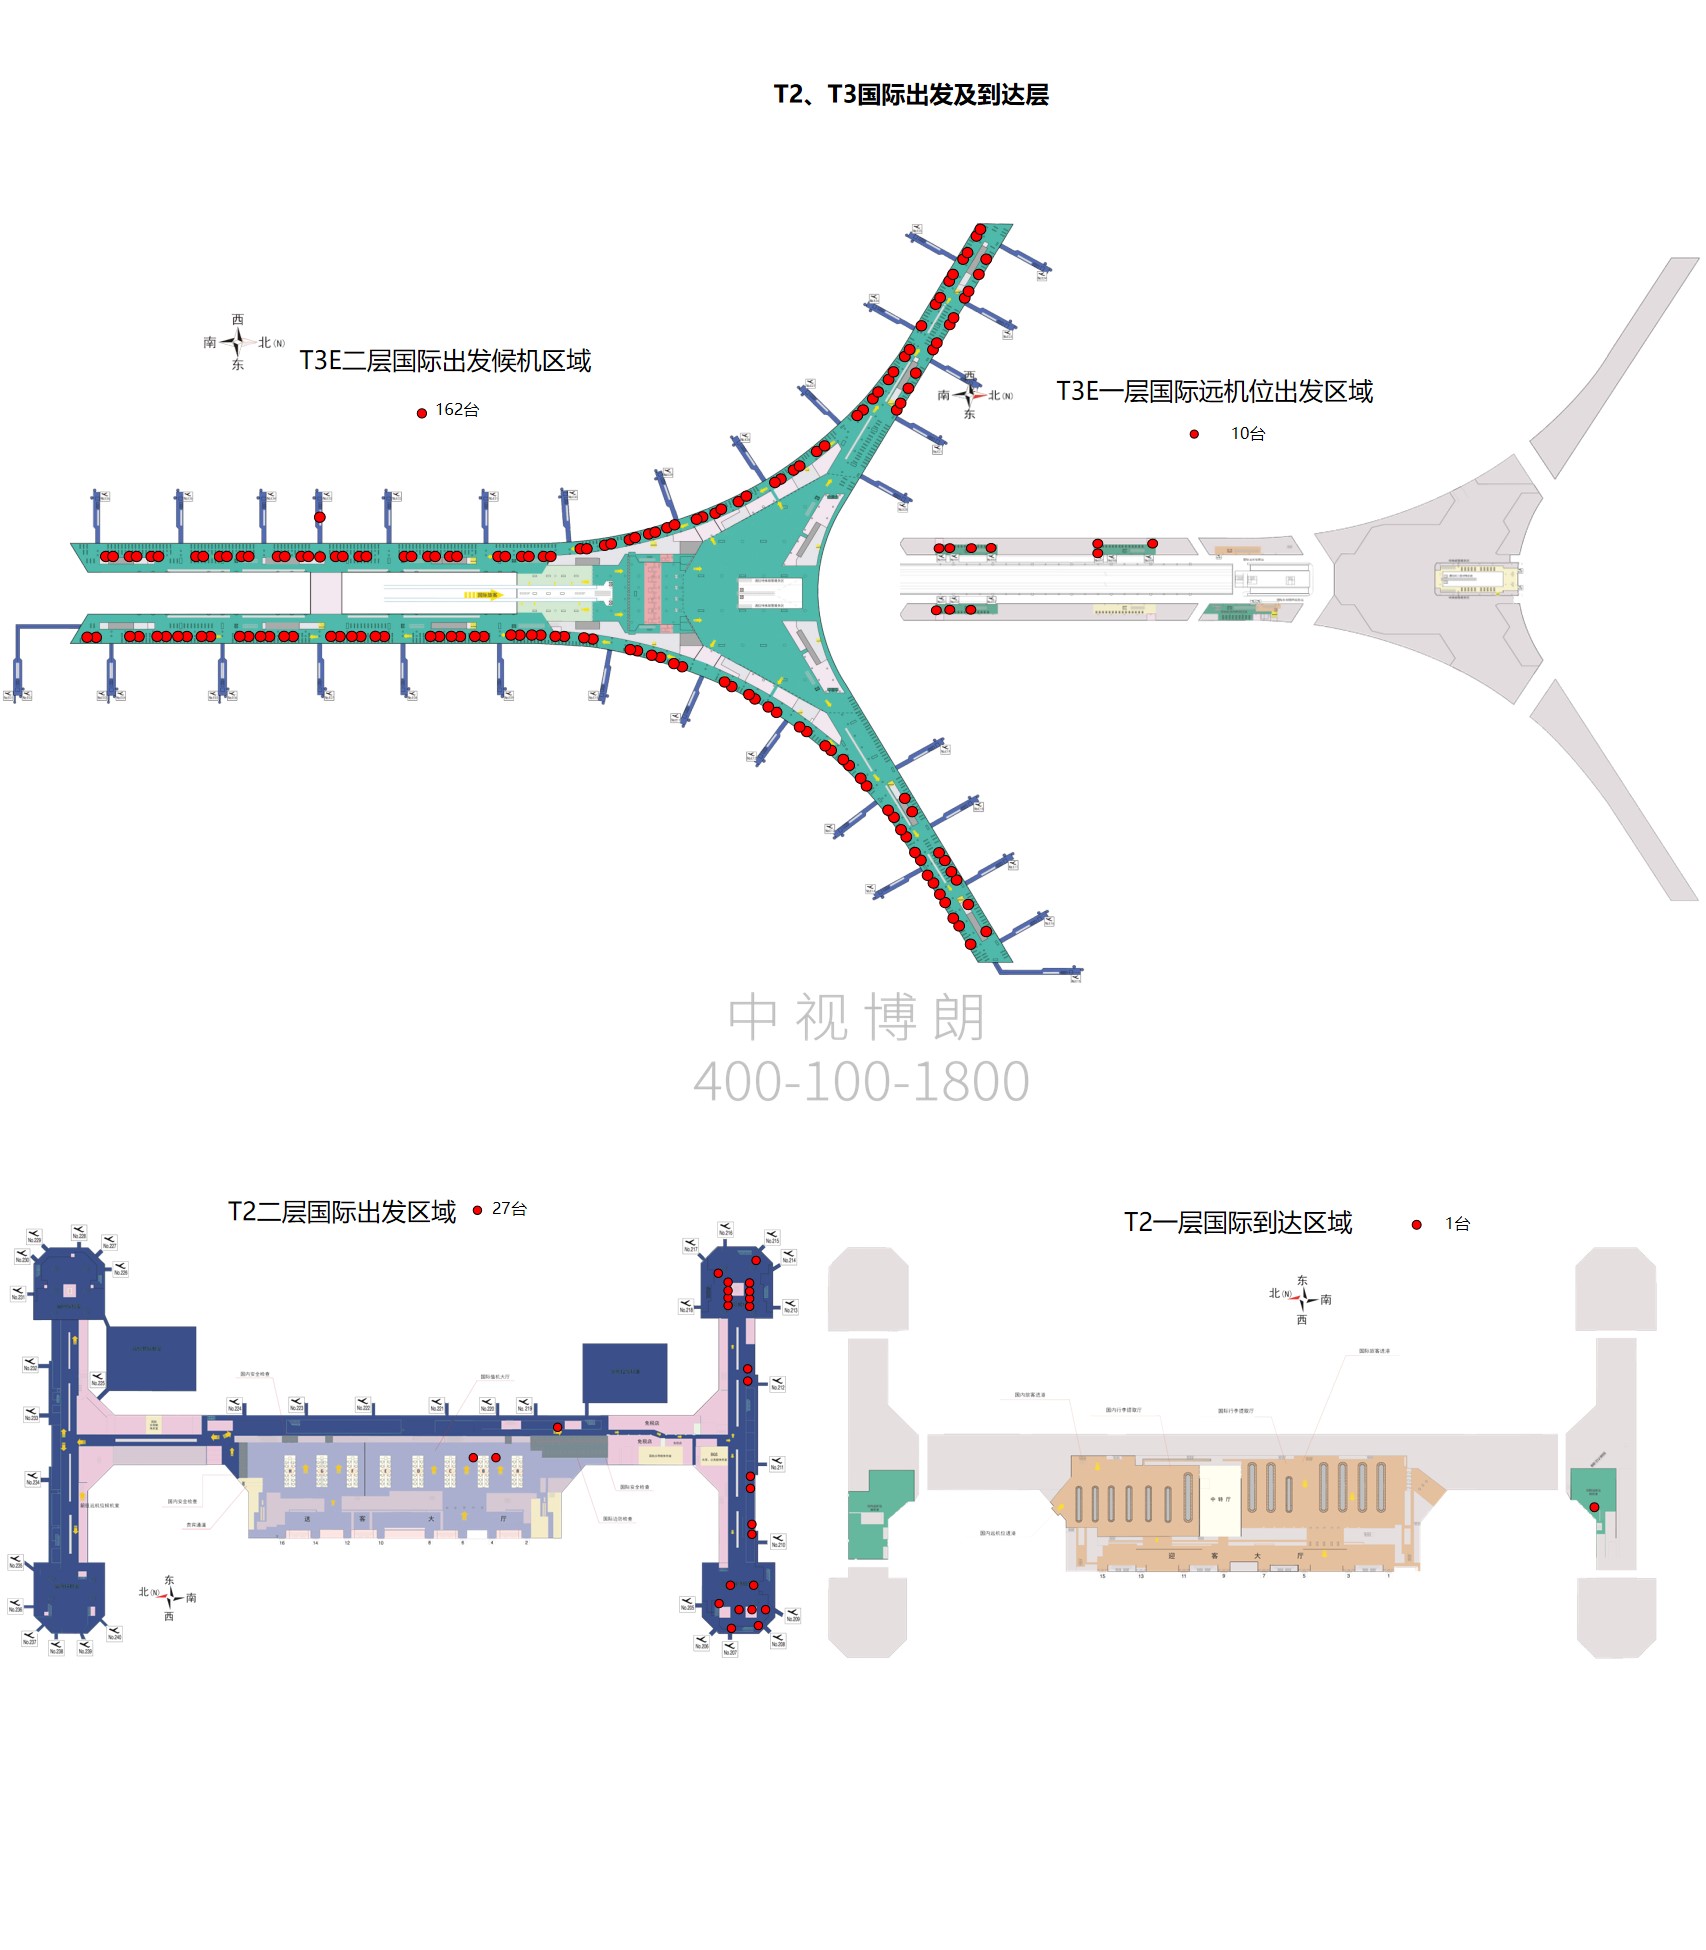 北京首都机场广告-T2T3 International Departure Arrival Swipe Screen Package位置图